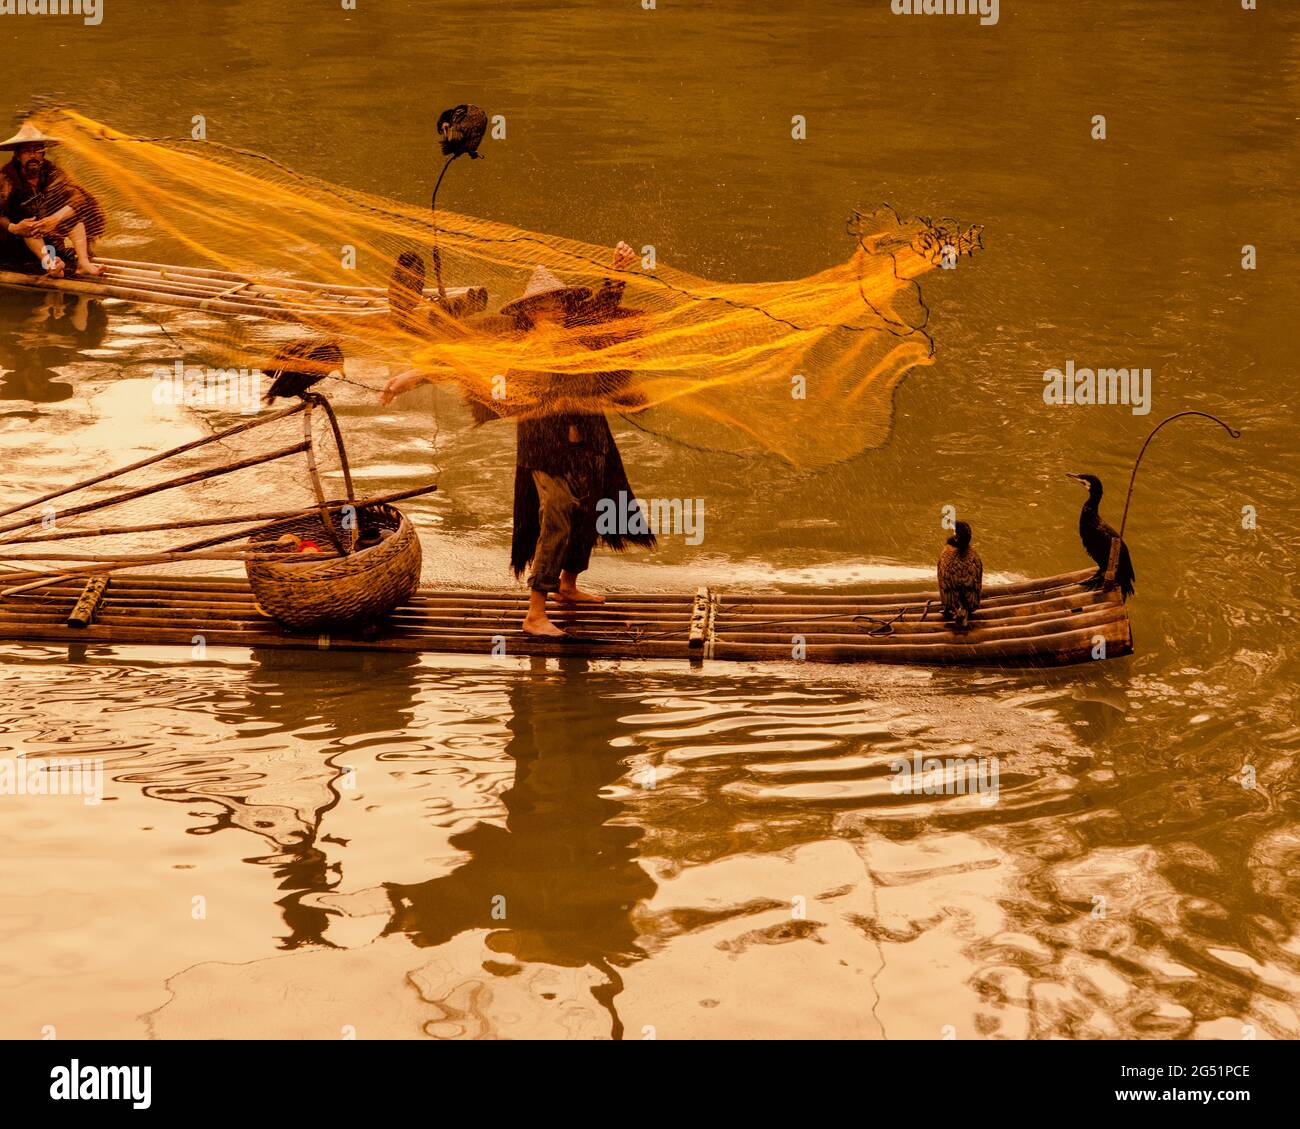 Pescatore cormorano gettando rete al tramonto, li River, Xingping, provincia di Shaanxi, Cina Foto Stock